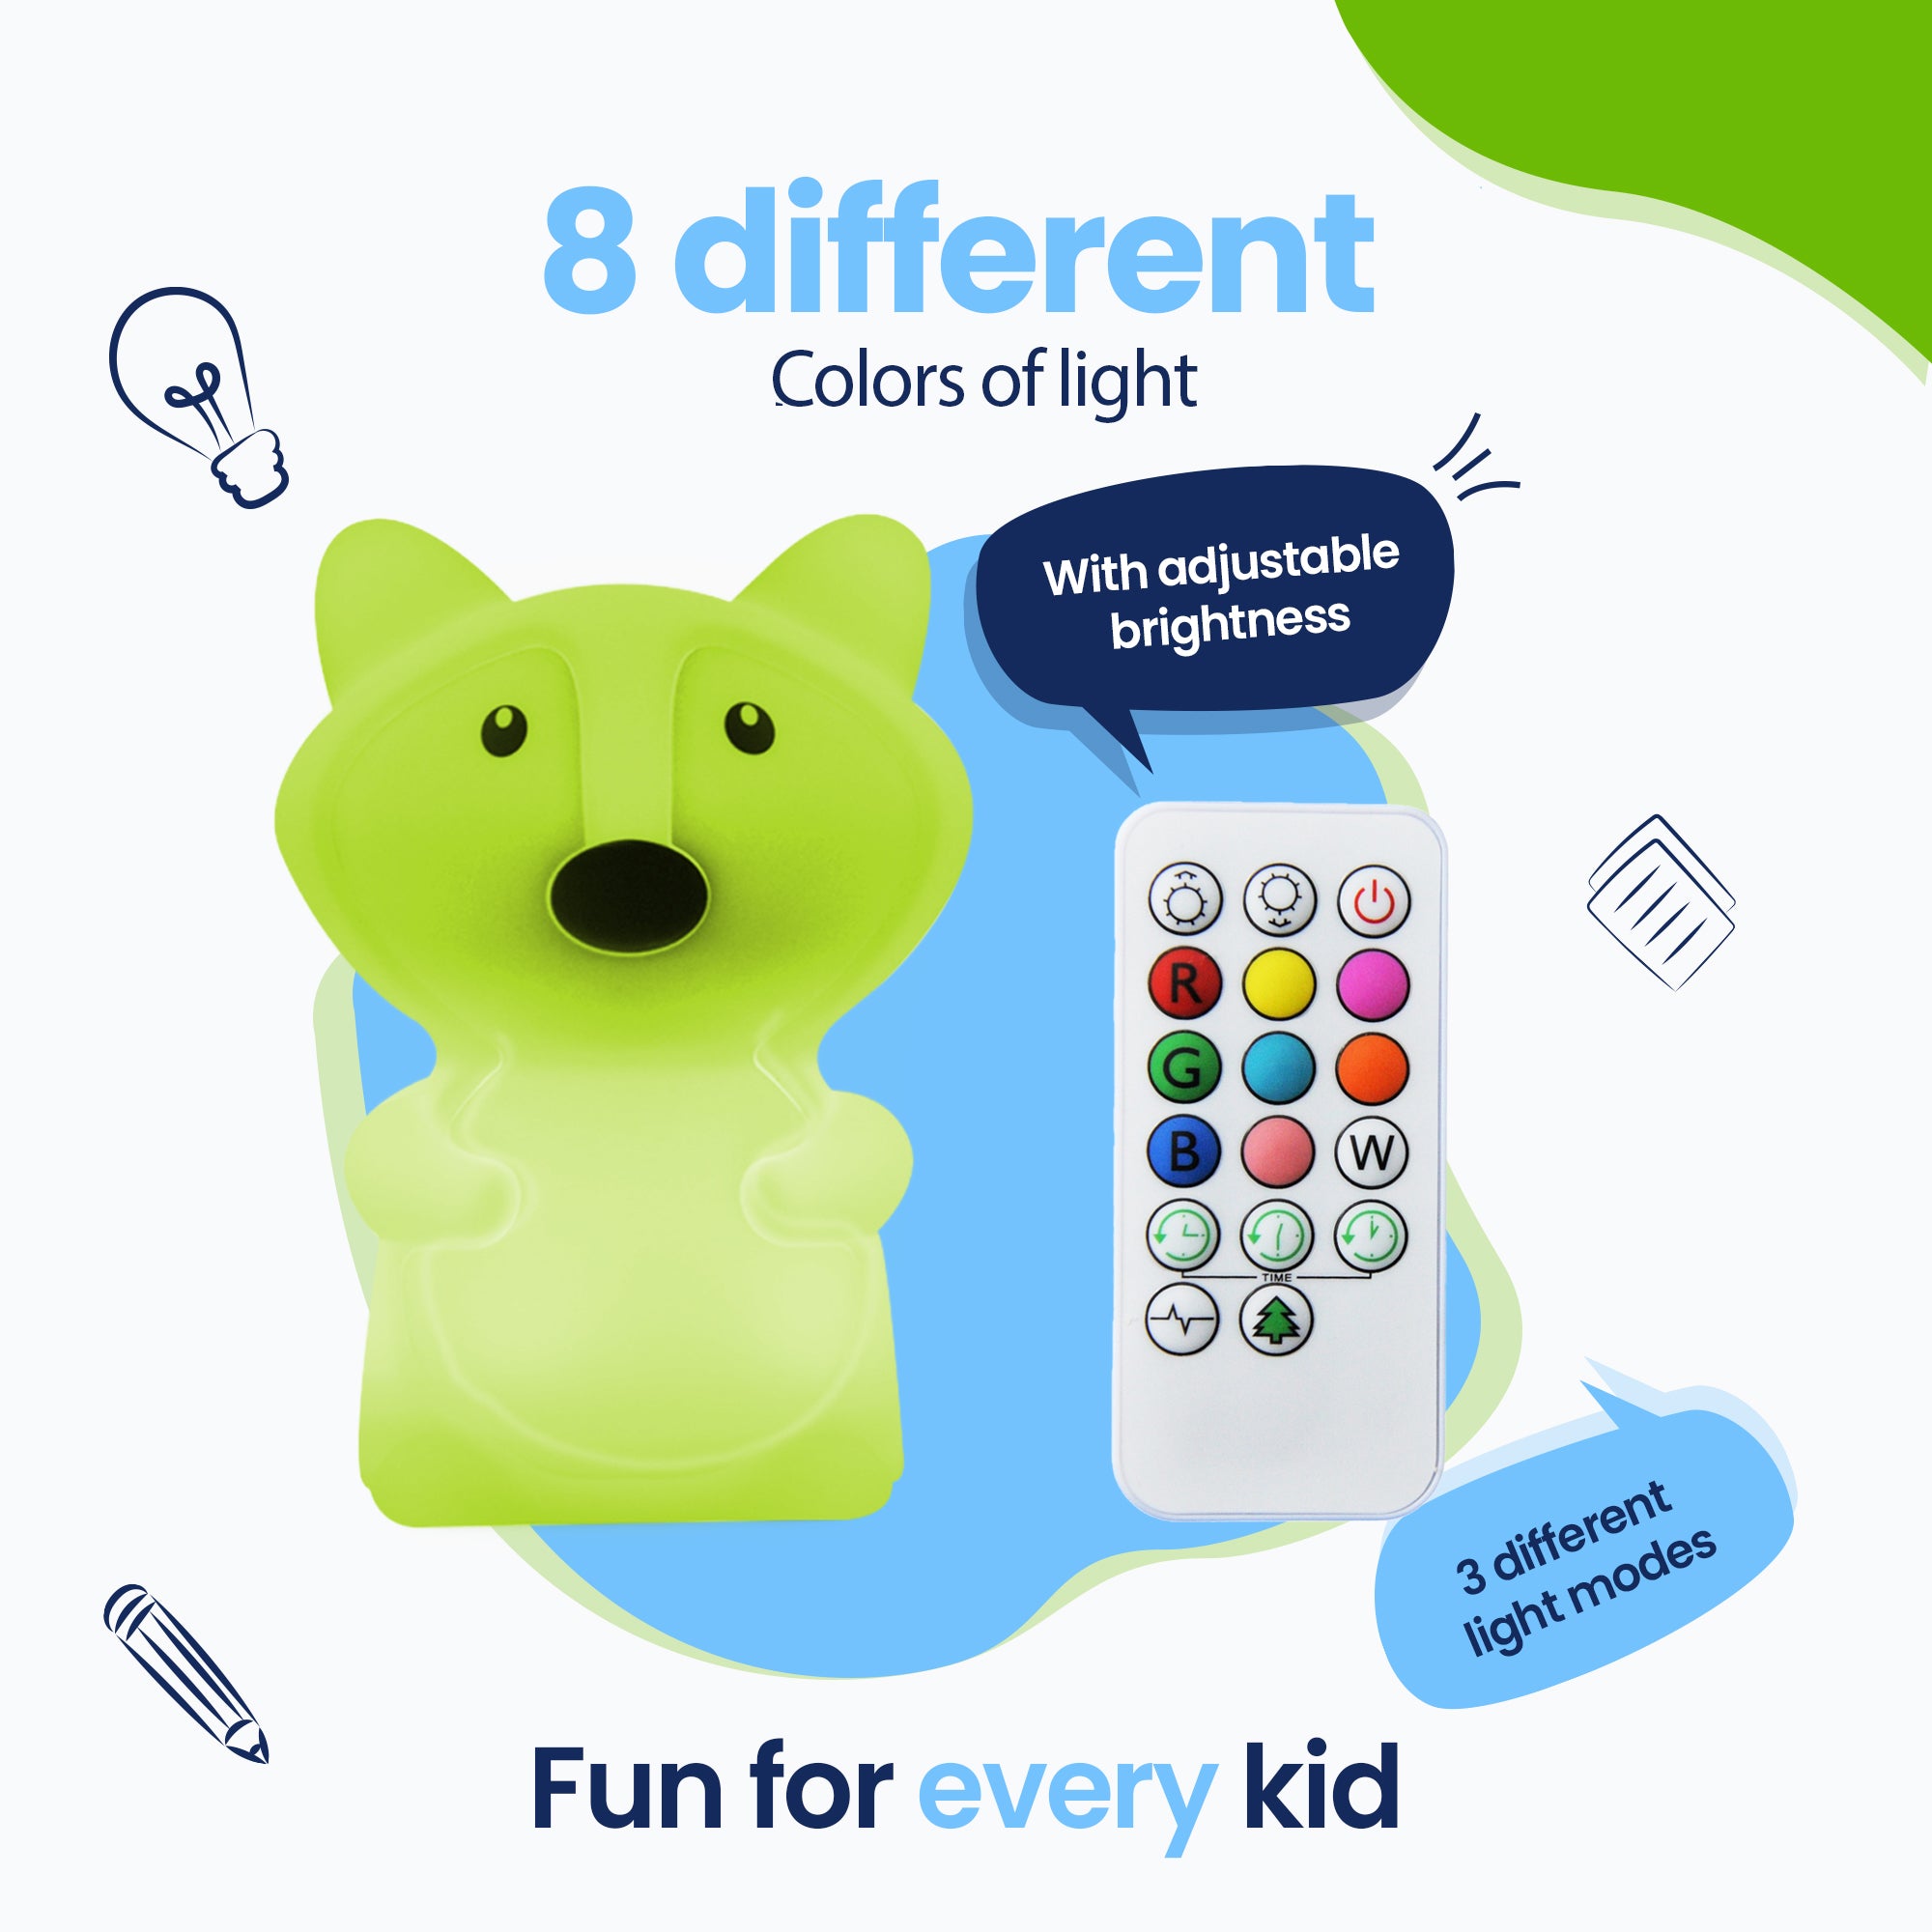 8 colores diferentes de luz - 3 modos de luz diferentes - Diversión para todos los niños